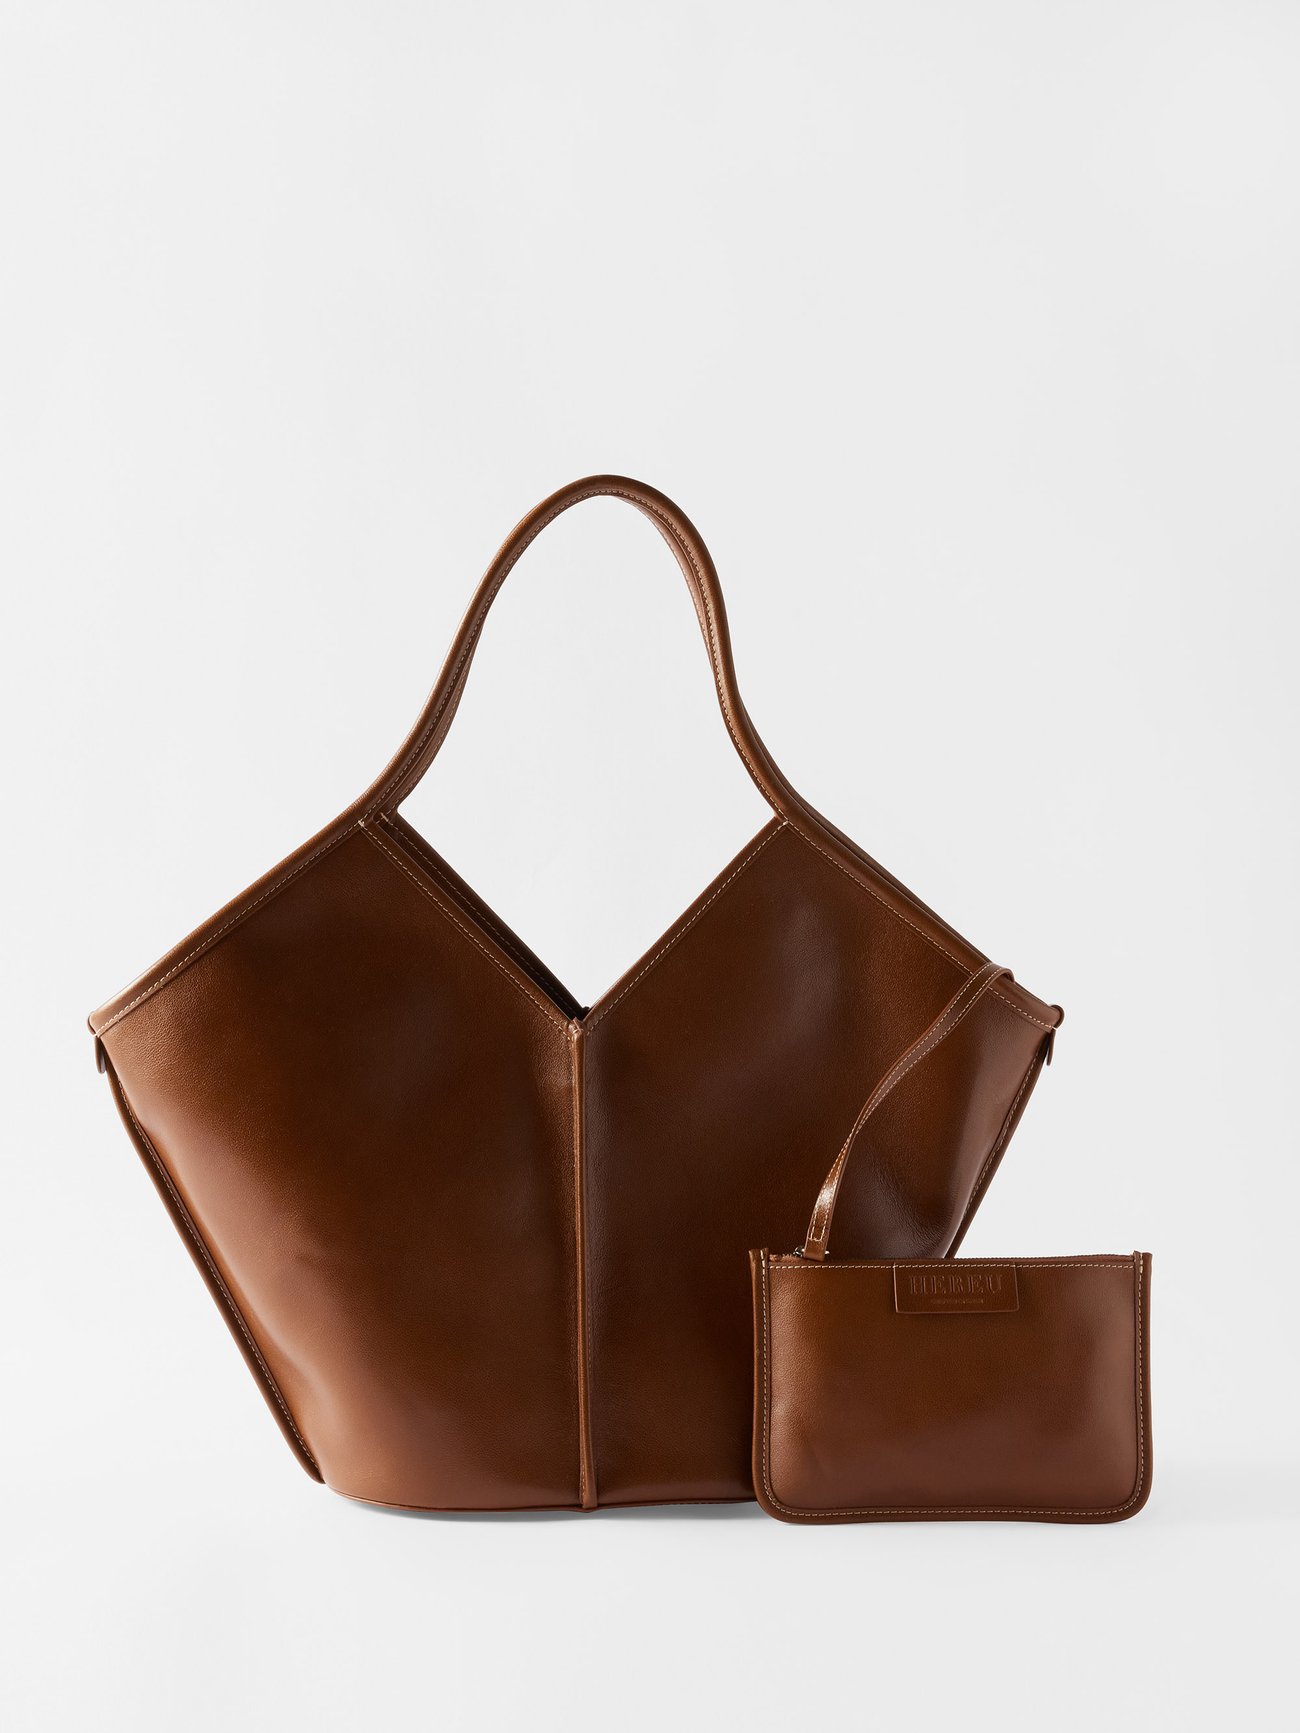 Tan Calella leather tote bag, Hereu